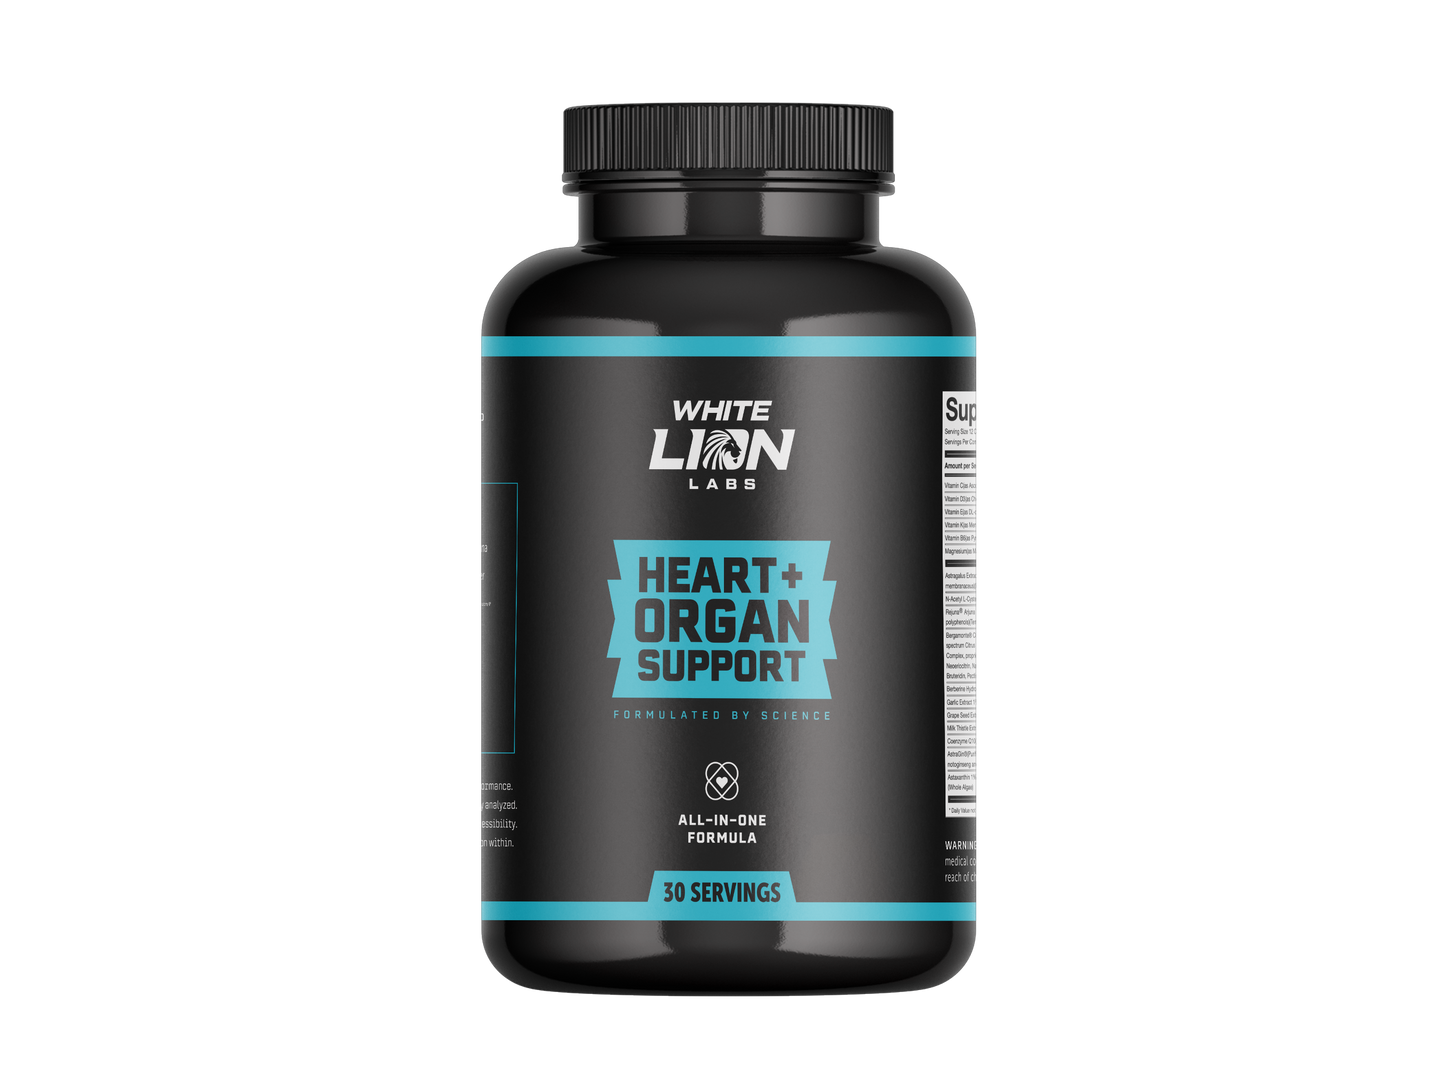 Heart + Organ Support